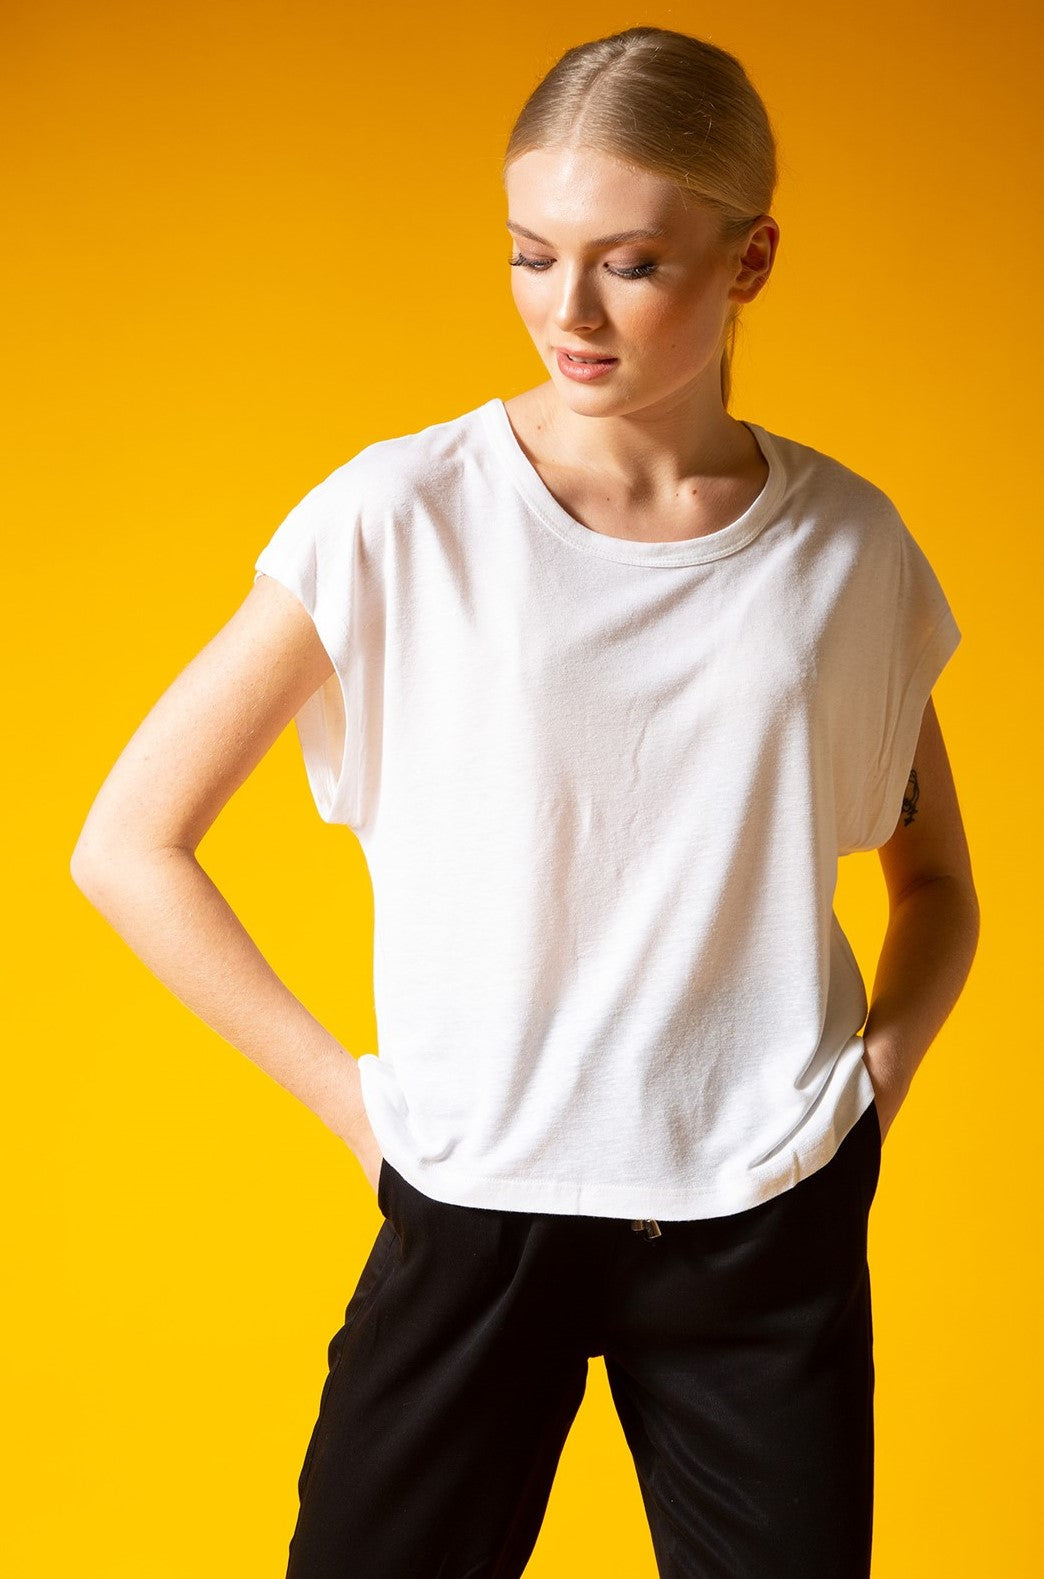 Chassca Sleeveless Viscose & Linen T-Shirt